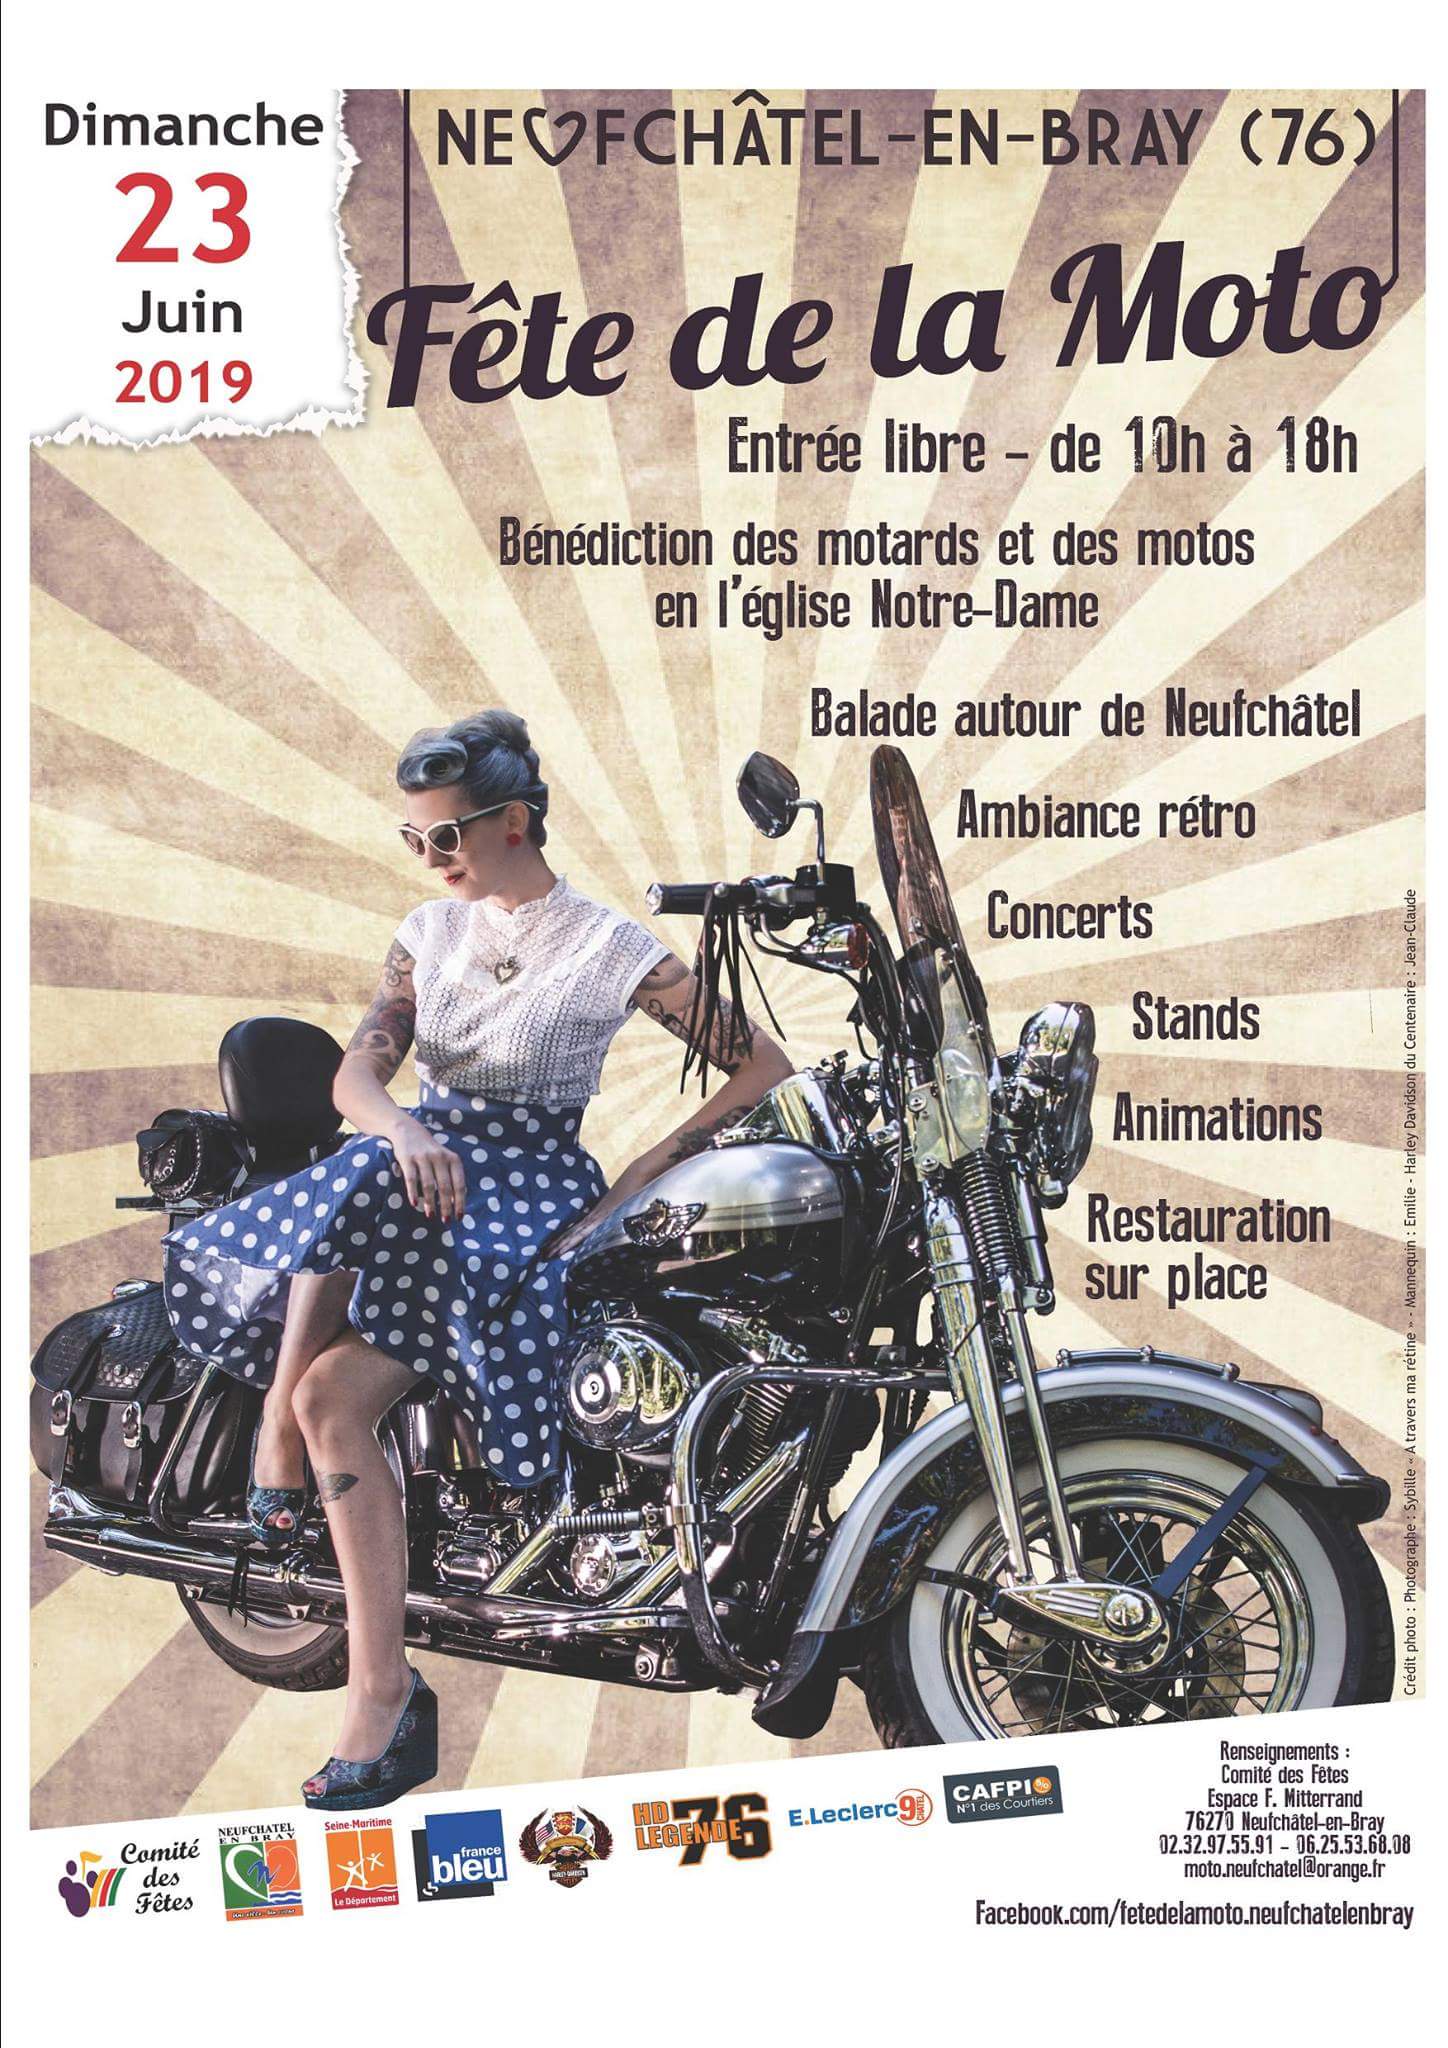 23 Juin 2019 - Fête de la moto - Neufchatel en Bray (76) 2018-012